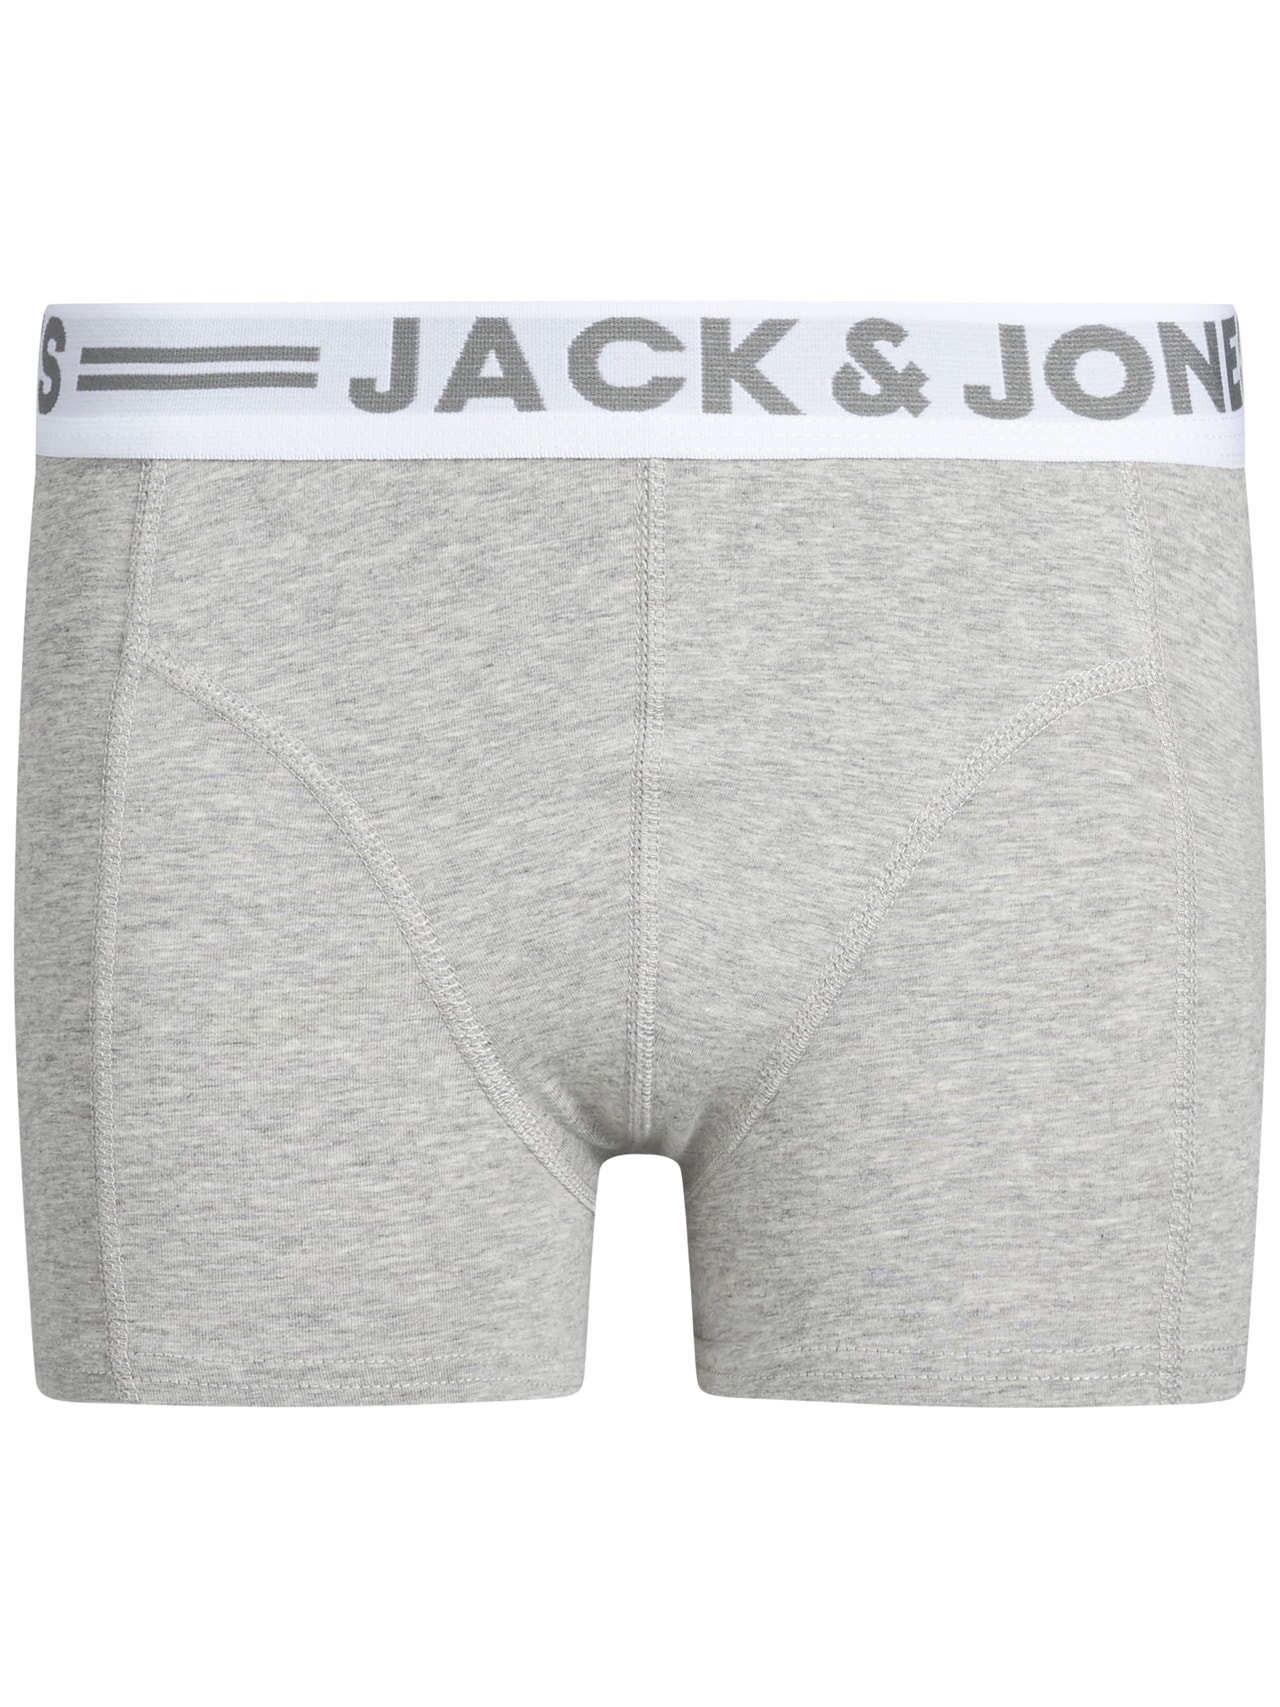 Jack & Jones 3-pack Trunks For boys -Light Grey Melange - 12149293